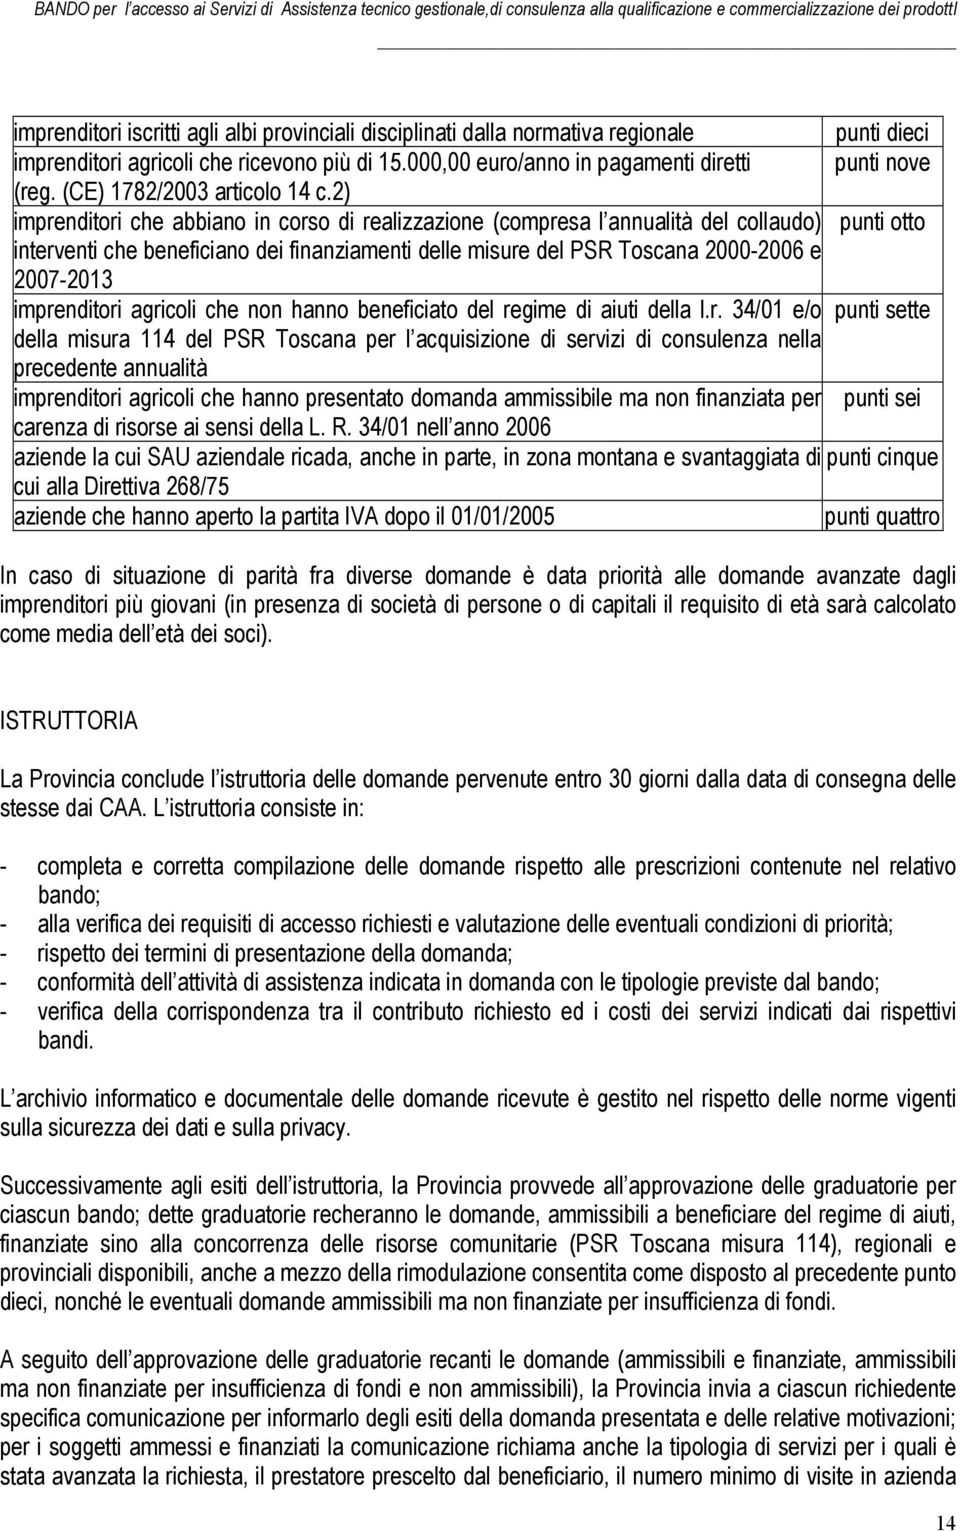 2) imprenditori che abbiano in corso di realizzazione (compresa l annualità del collaudo) punti otto interventi che beneficiano dei finanziamenti delle misure del PSR Toscana 2000-2006 e 2007-2013